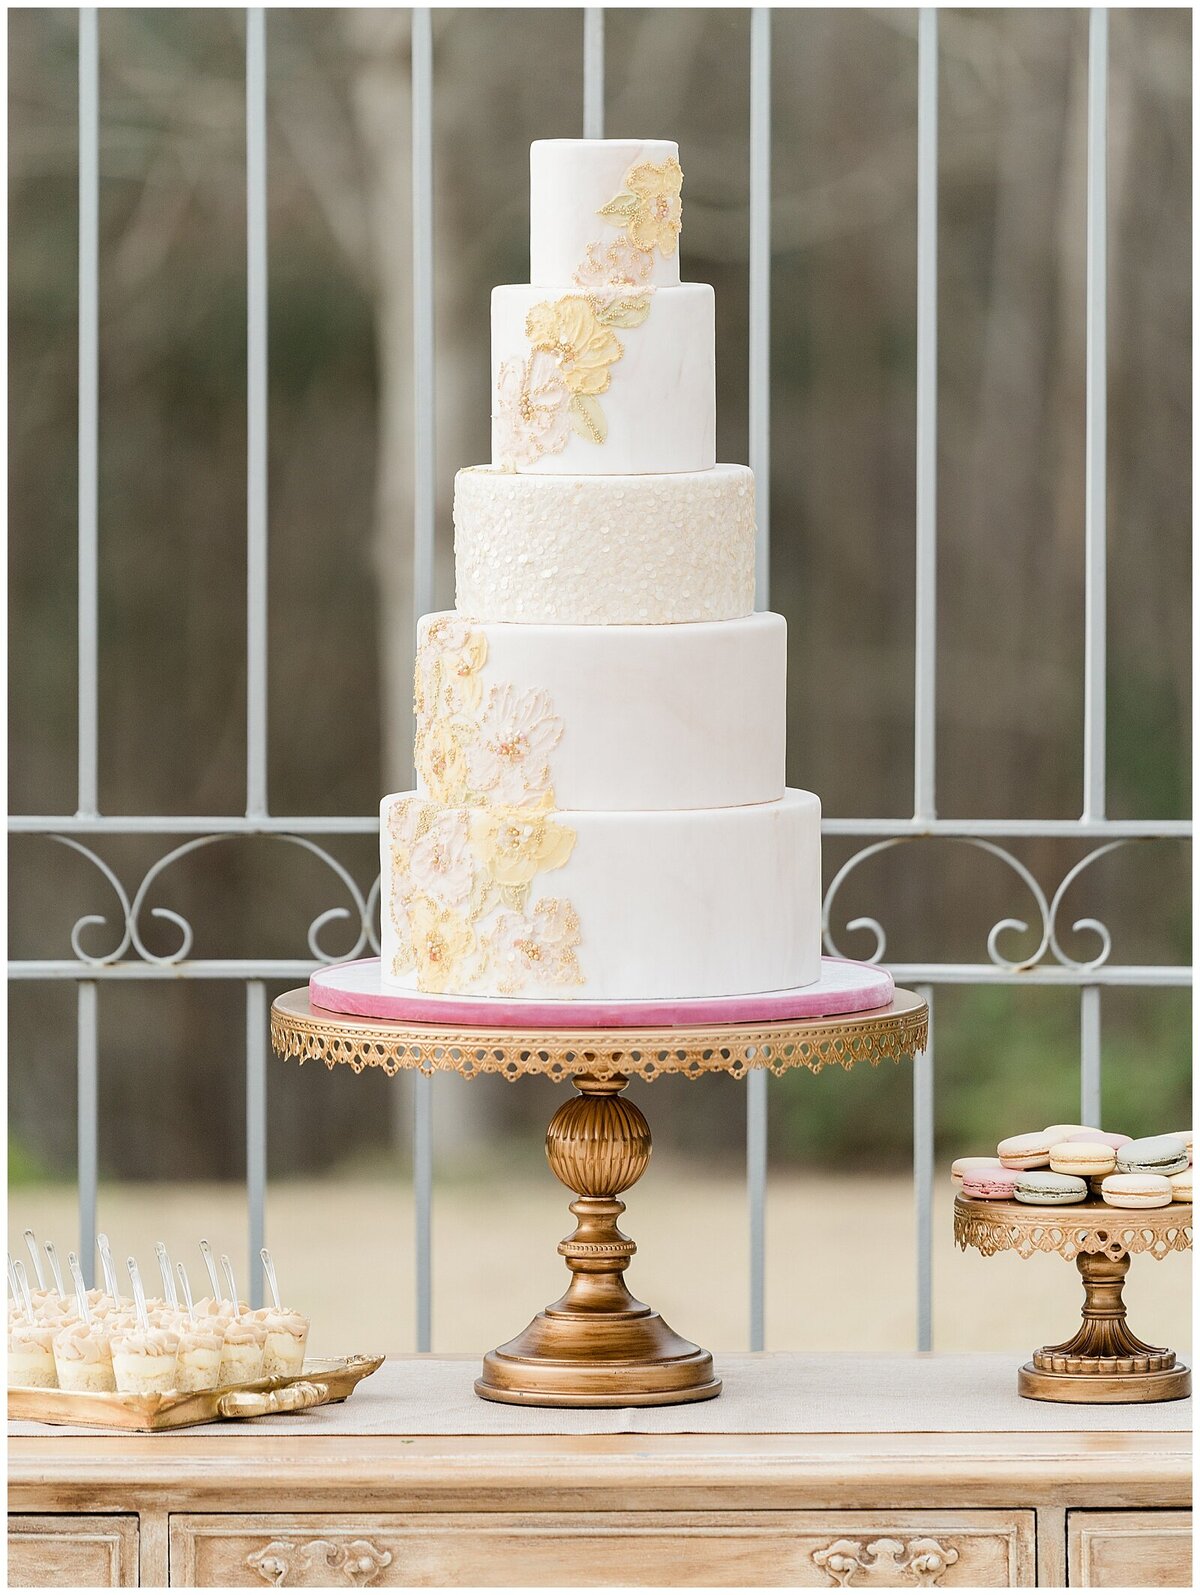 White wedding cake with yellow decor